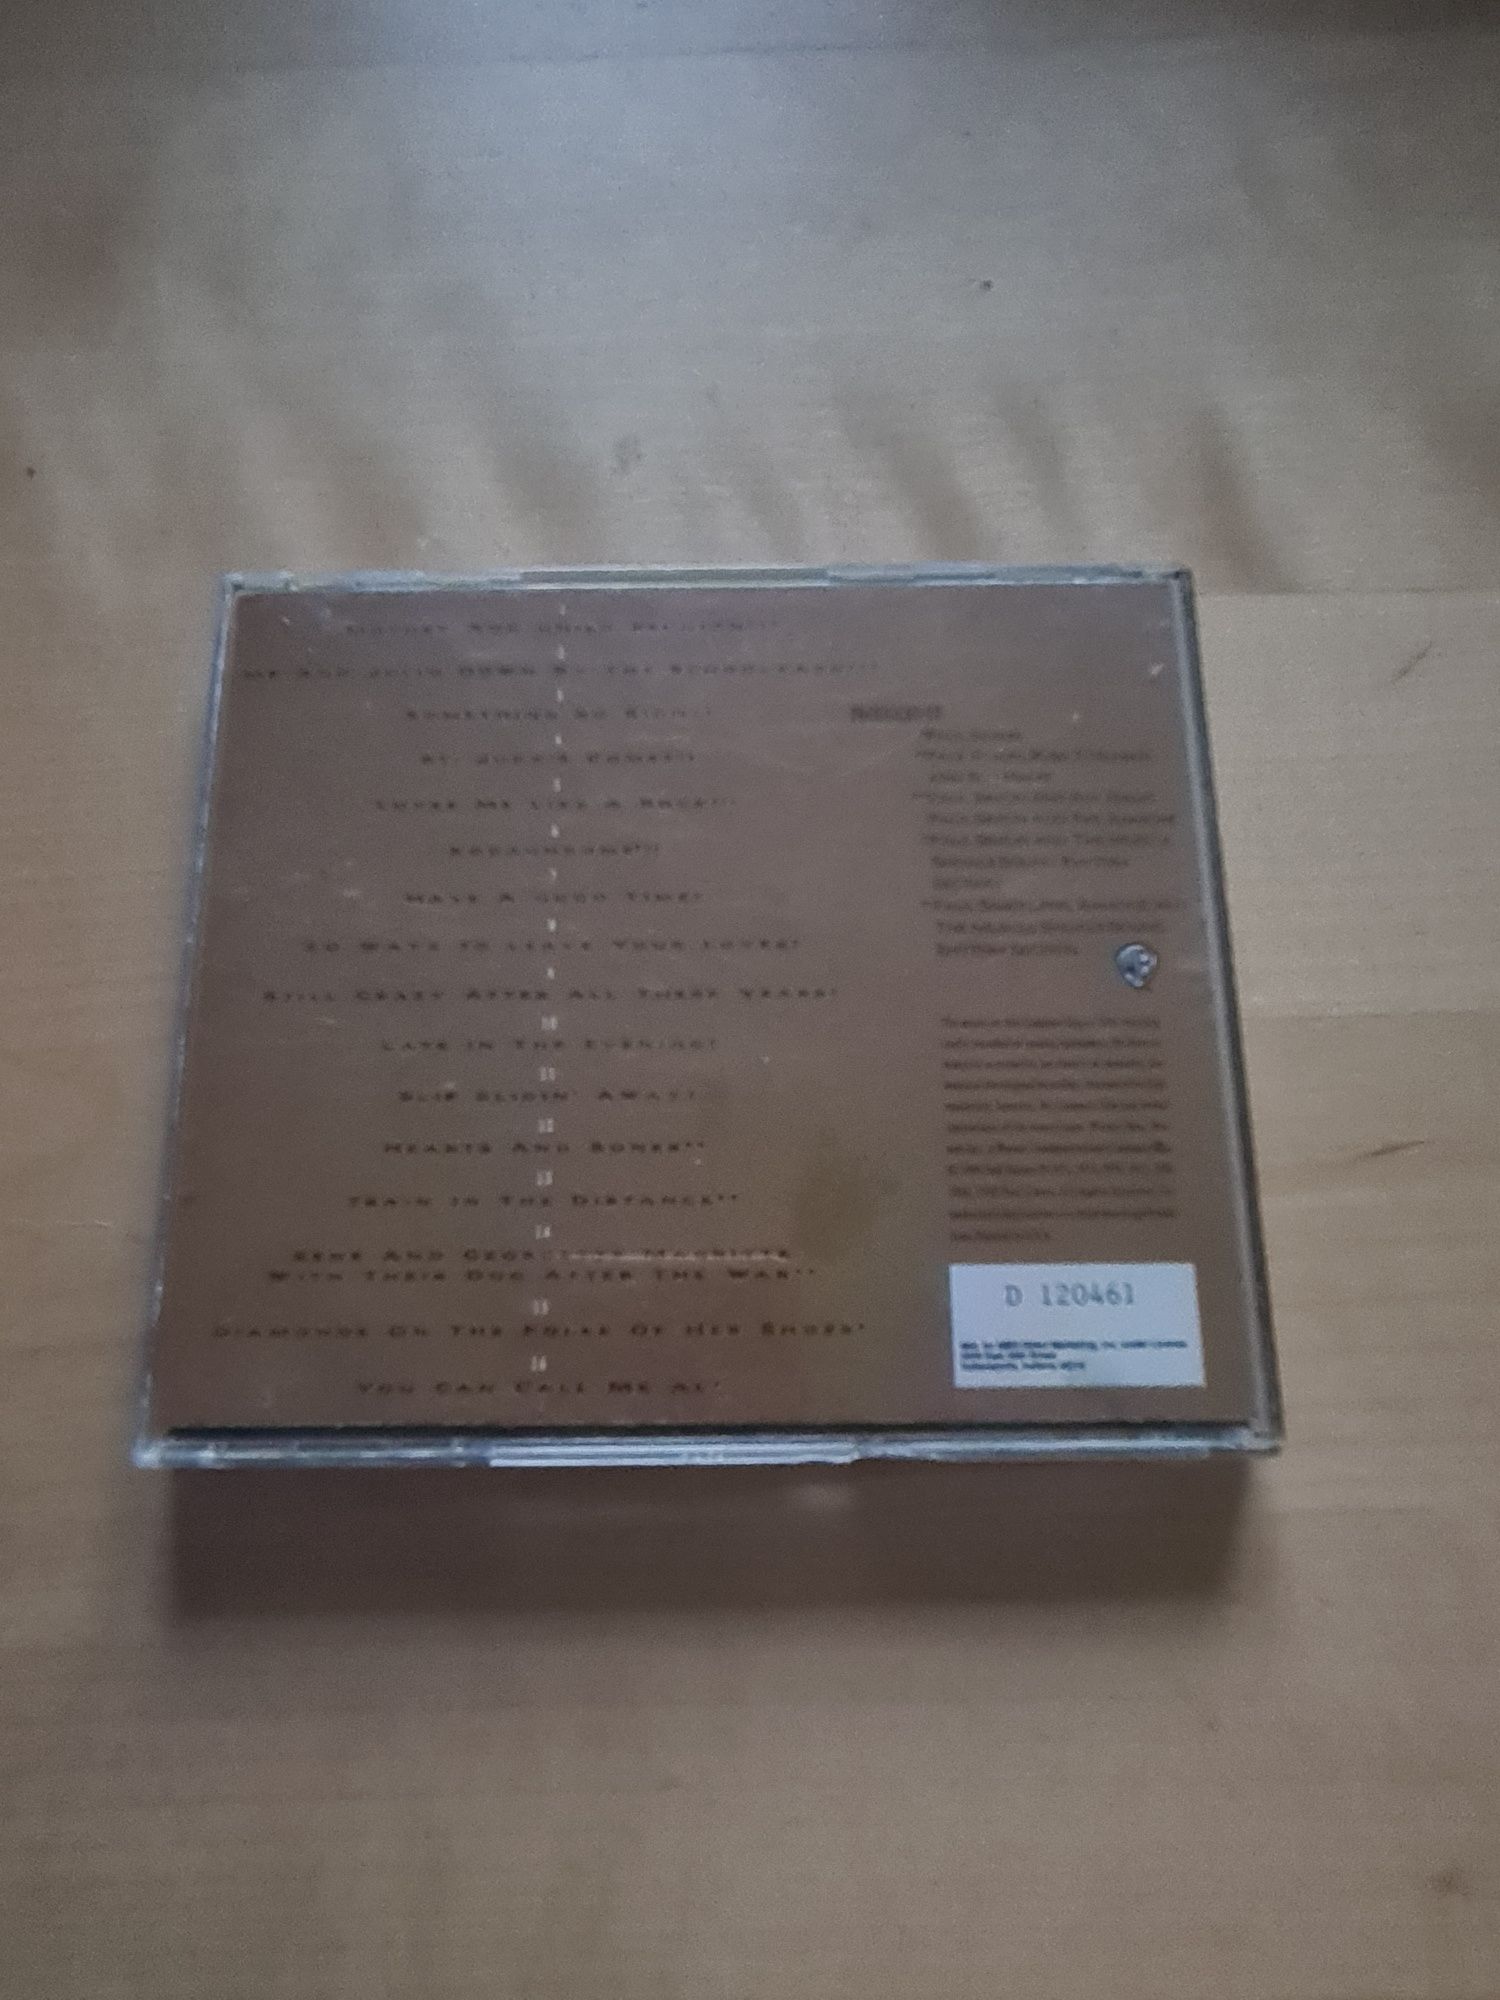 Płyta CD Paul Simon - Negotiations and Love Songs 1971 - 1986